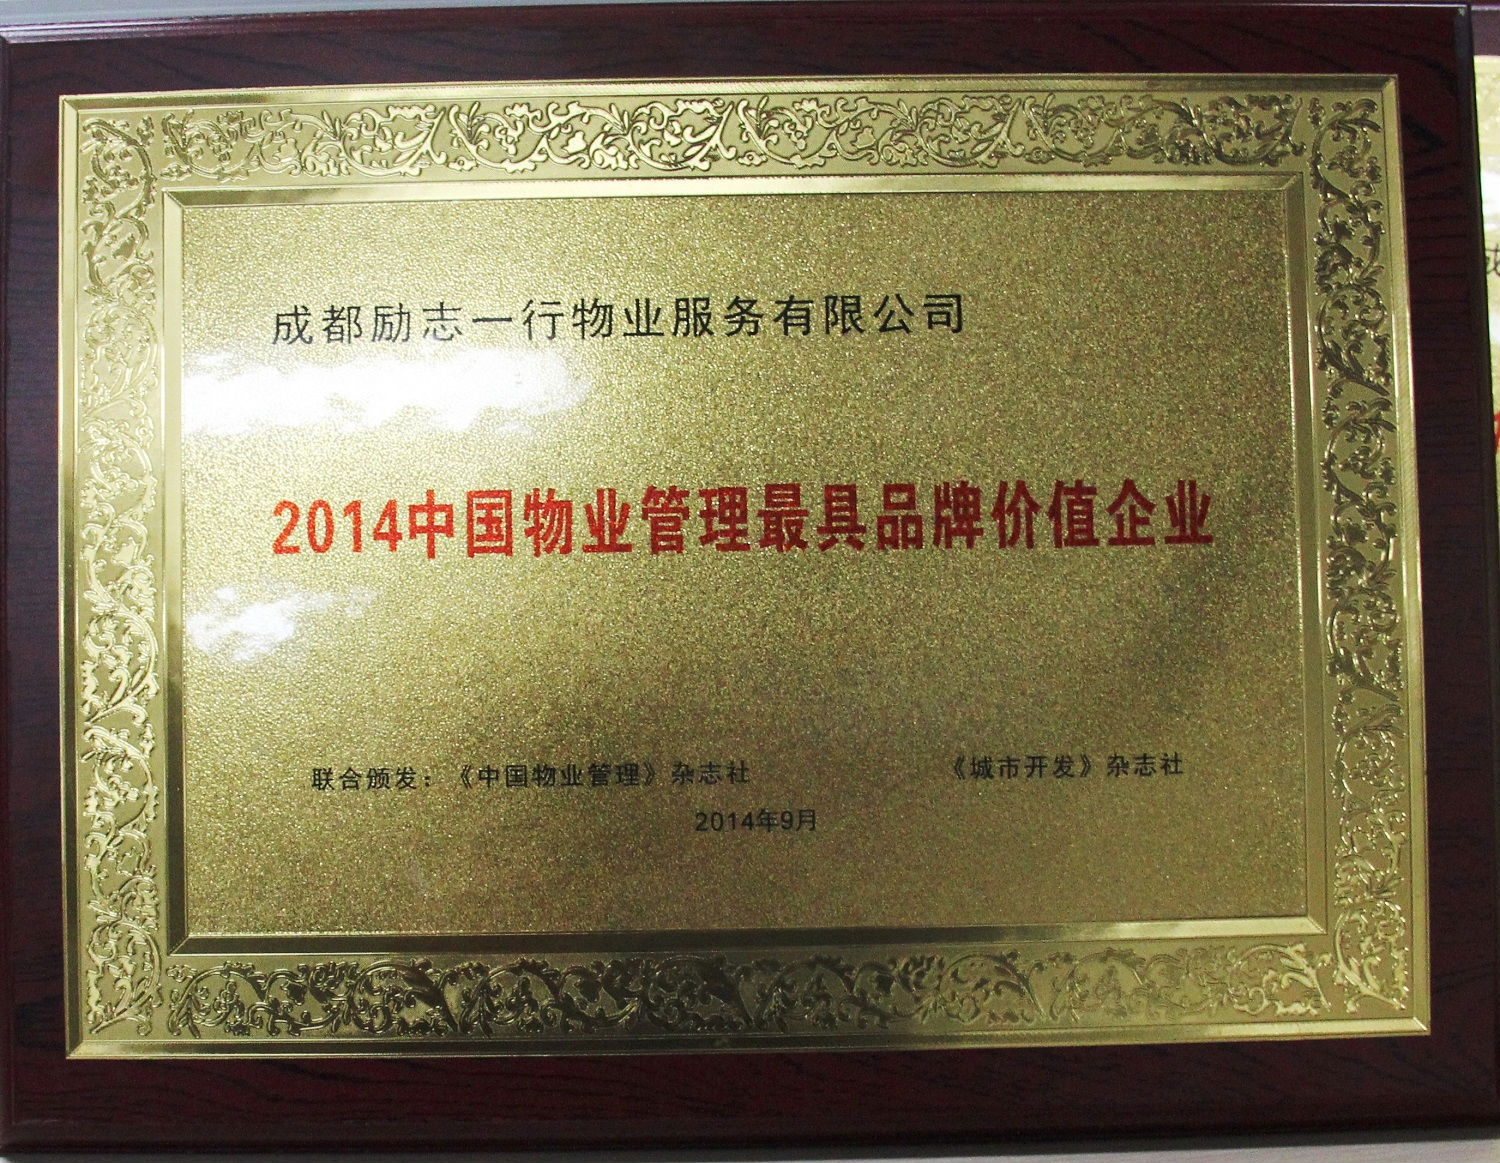 励志物业——2014中国物业管理最具品牌价值企业